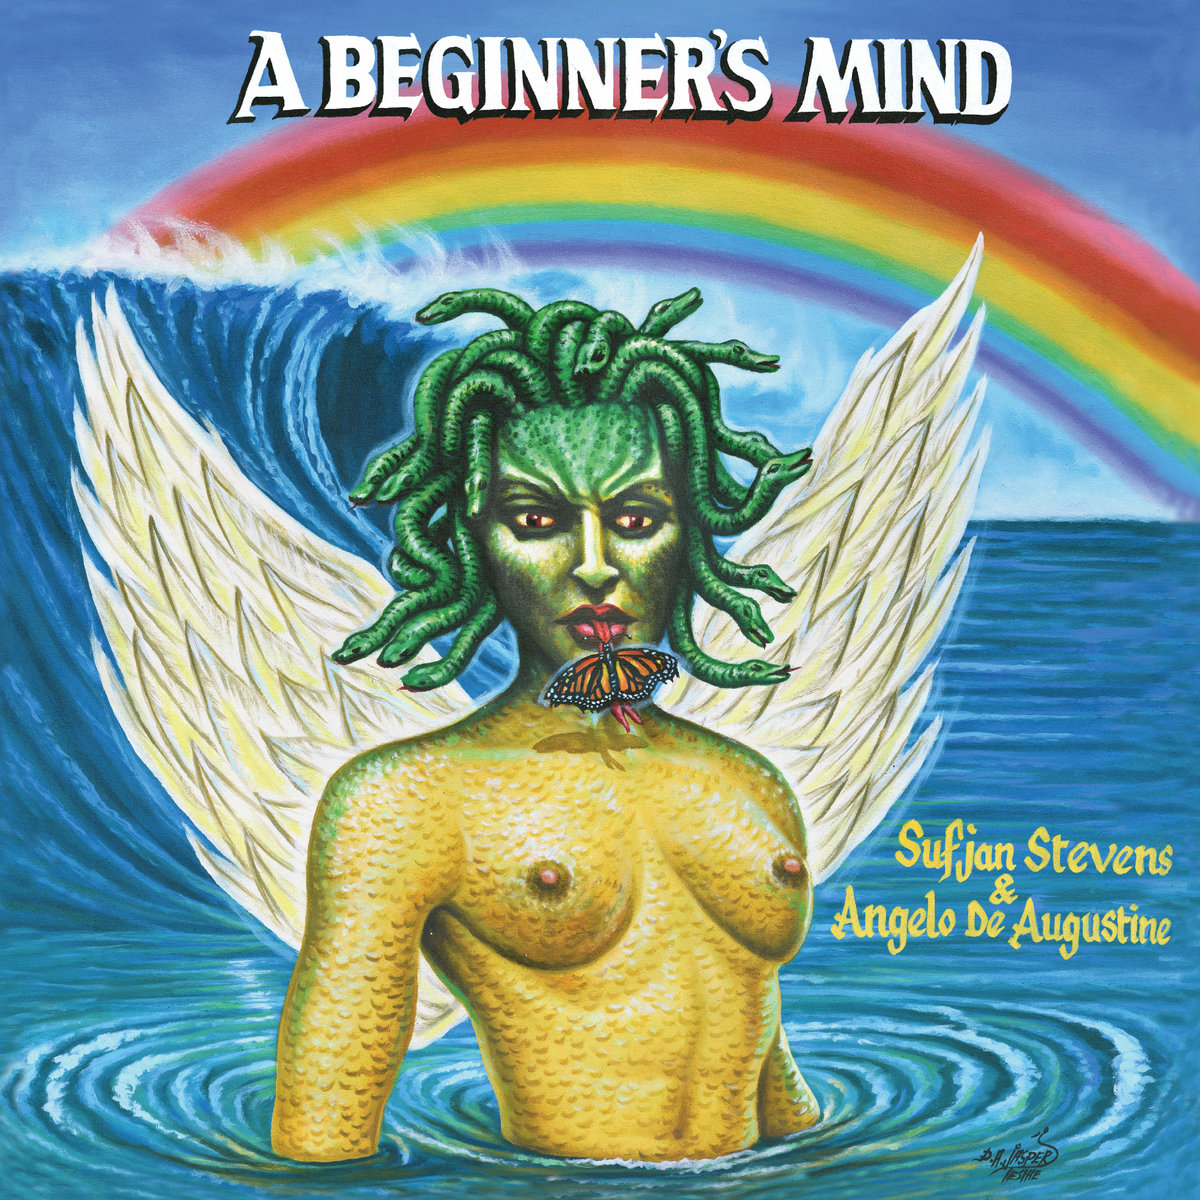 Sufjan Stevens & Angelo de Augustine "A Beginner's Mind" LP